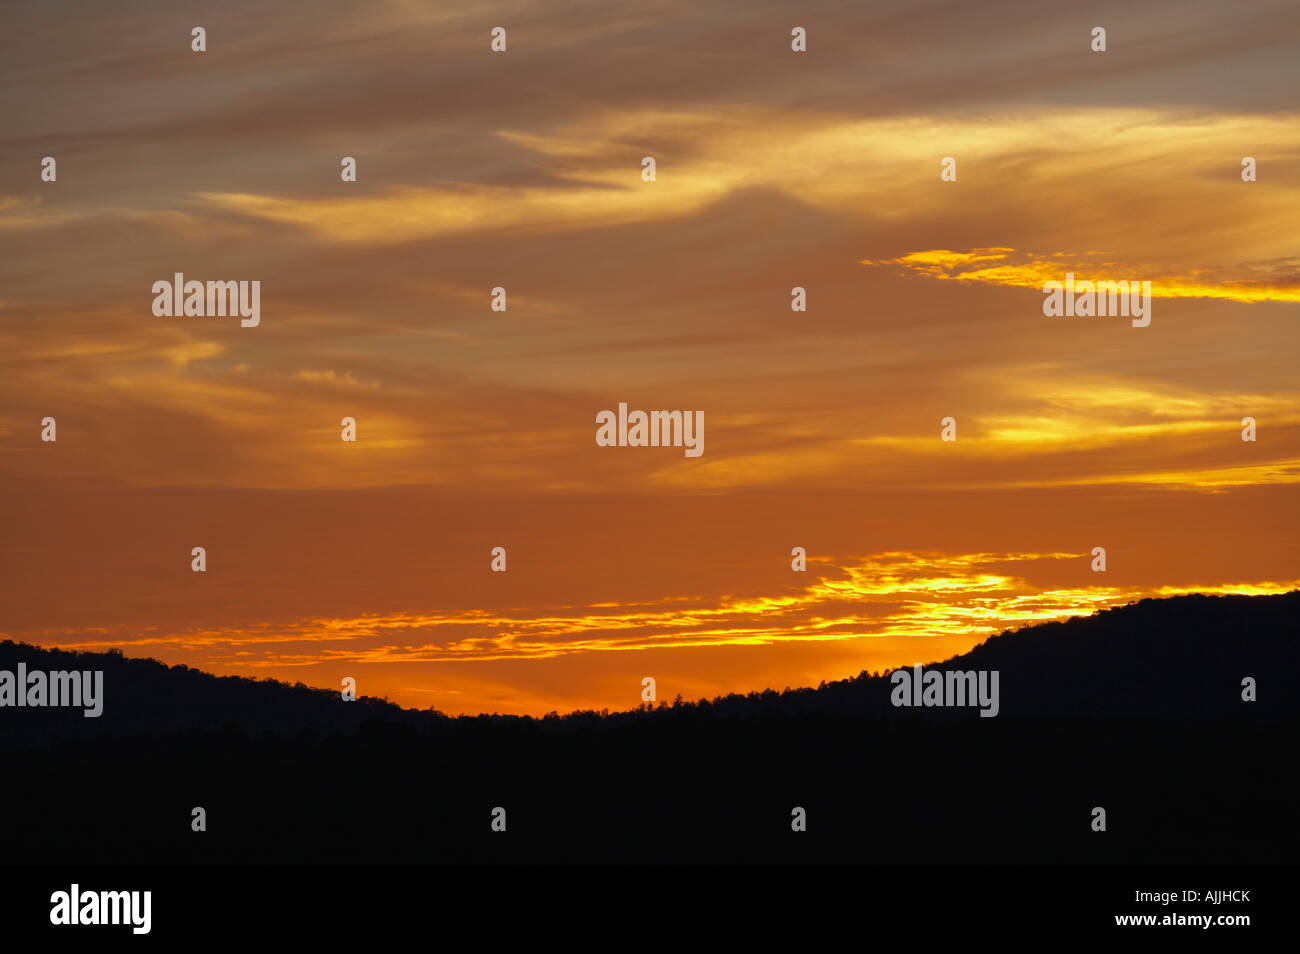 Sunset over Adirondack Mountains near Lake Placid New York United States Stock Photo